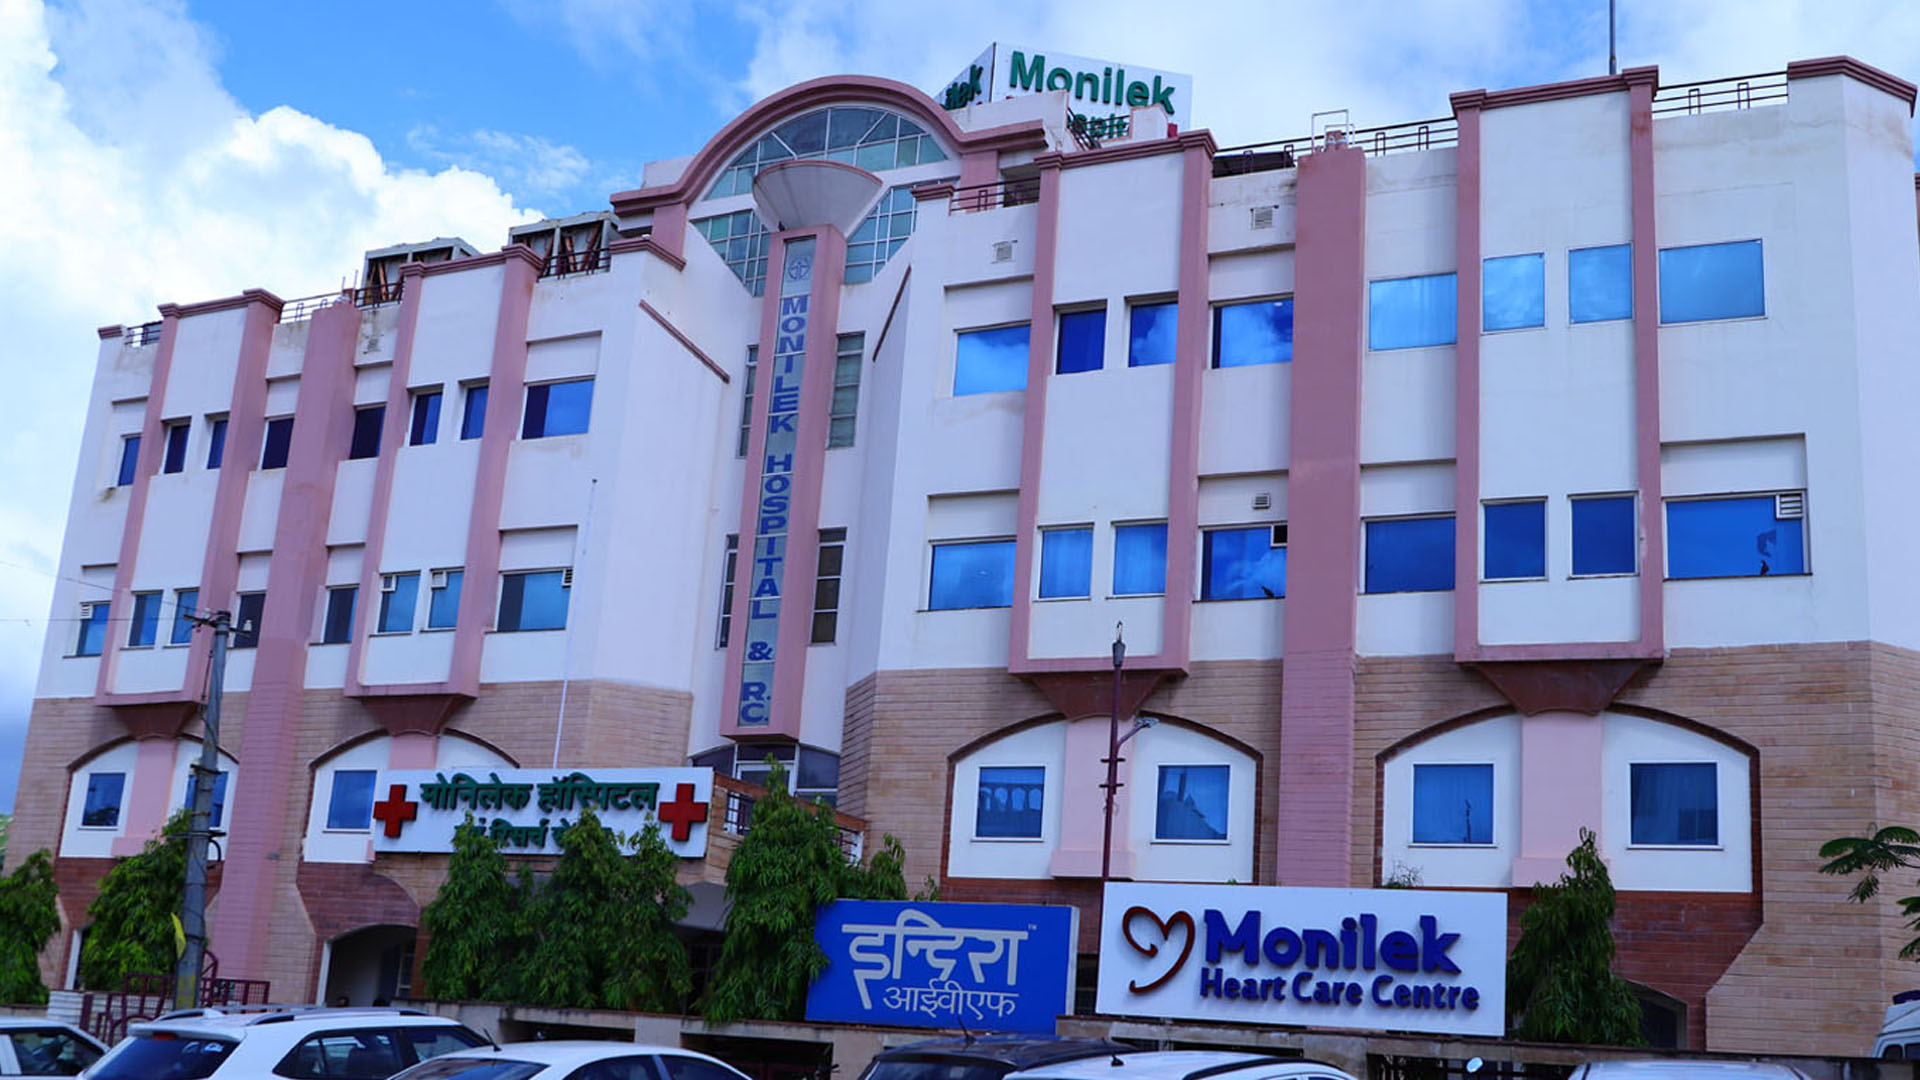 Monilek Hospital & Research Centre from Chanakya Puri Sector 4, Jawahar Nagar ,Jaipur ,Rajasthan, India | Kayawell